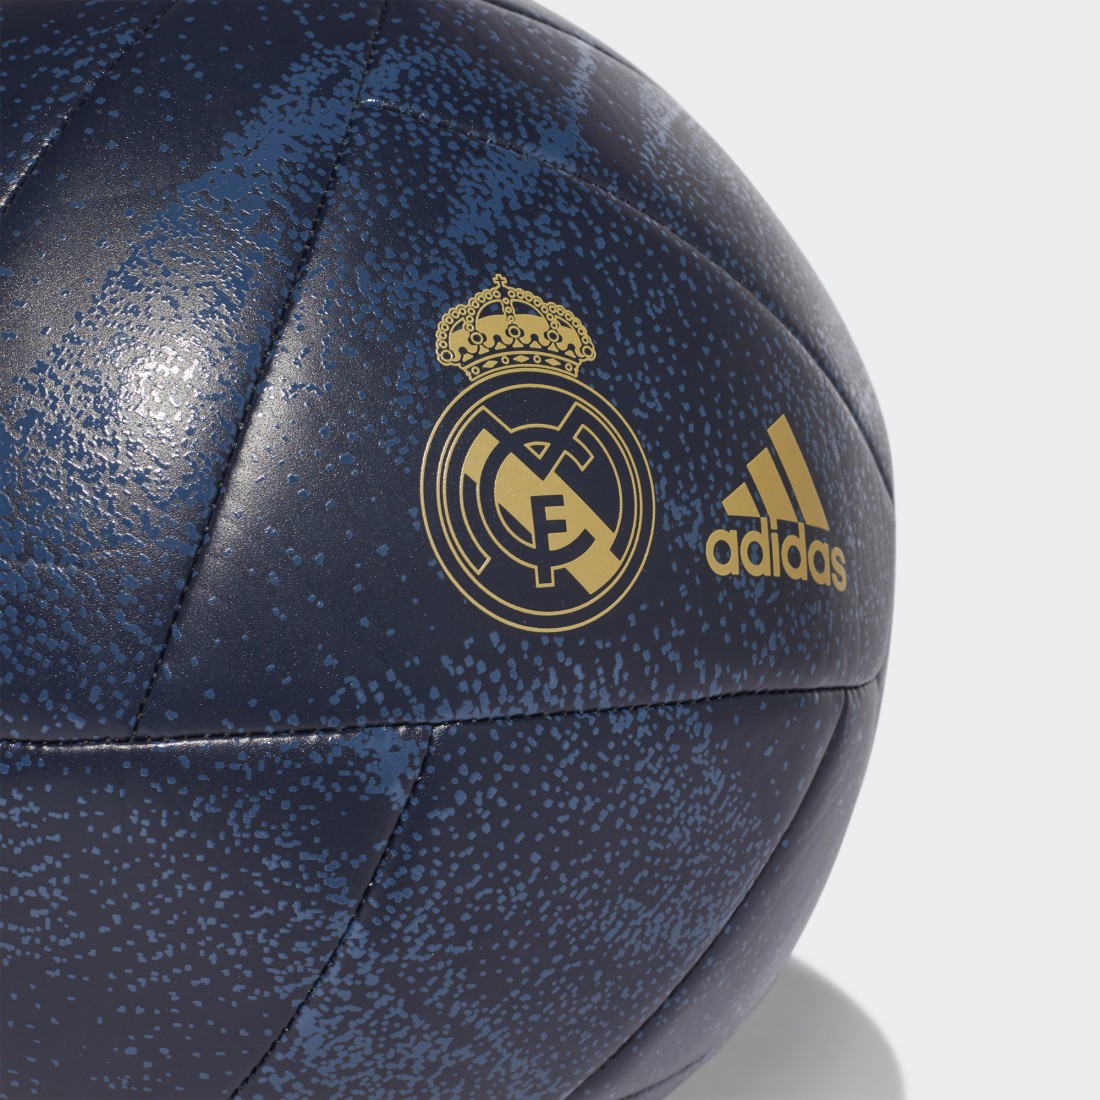 adidas - Ballon De Foot Real Madrid EC3035 Bleu Marine Doré